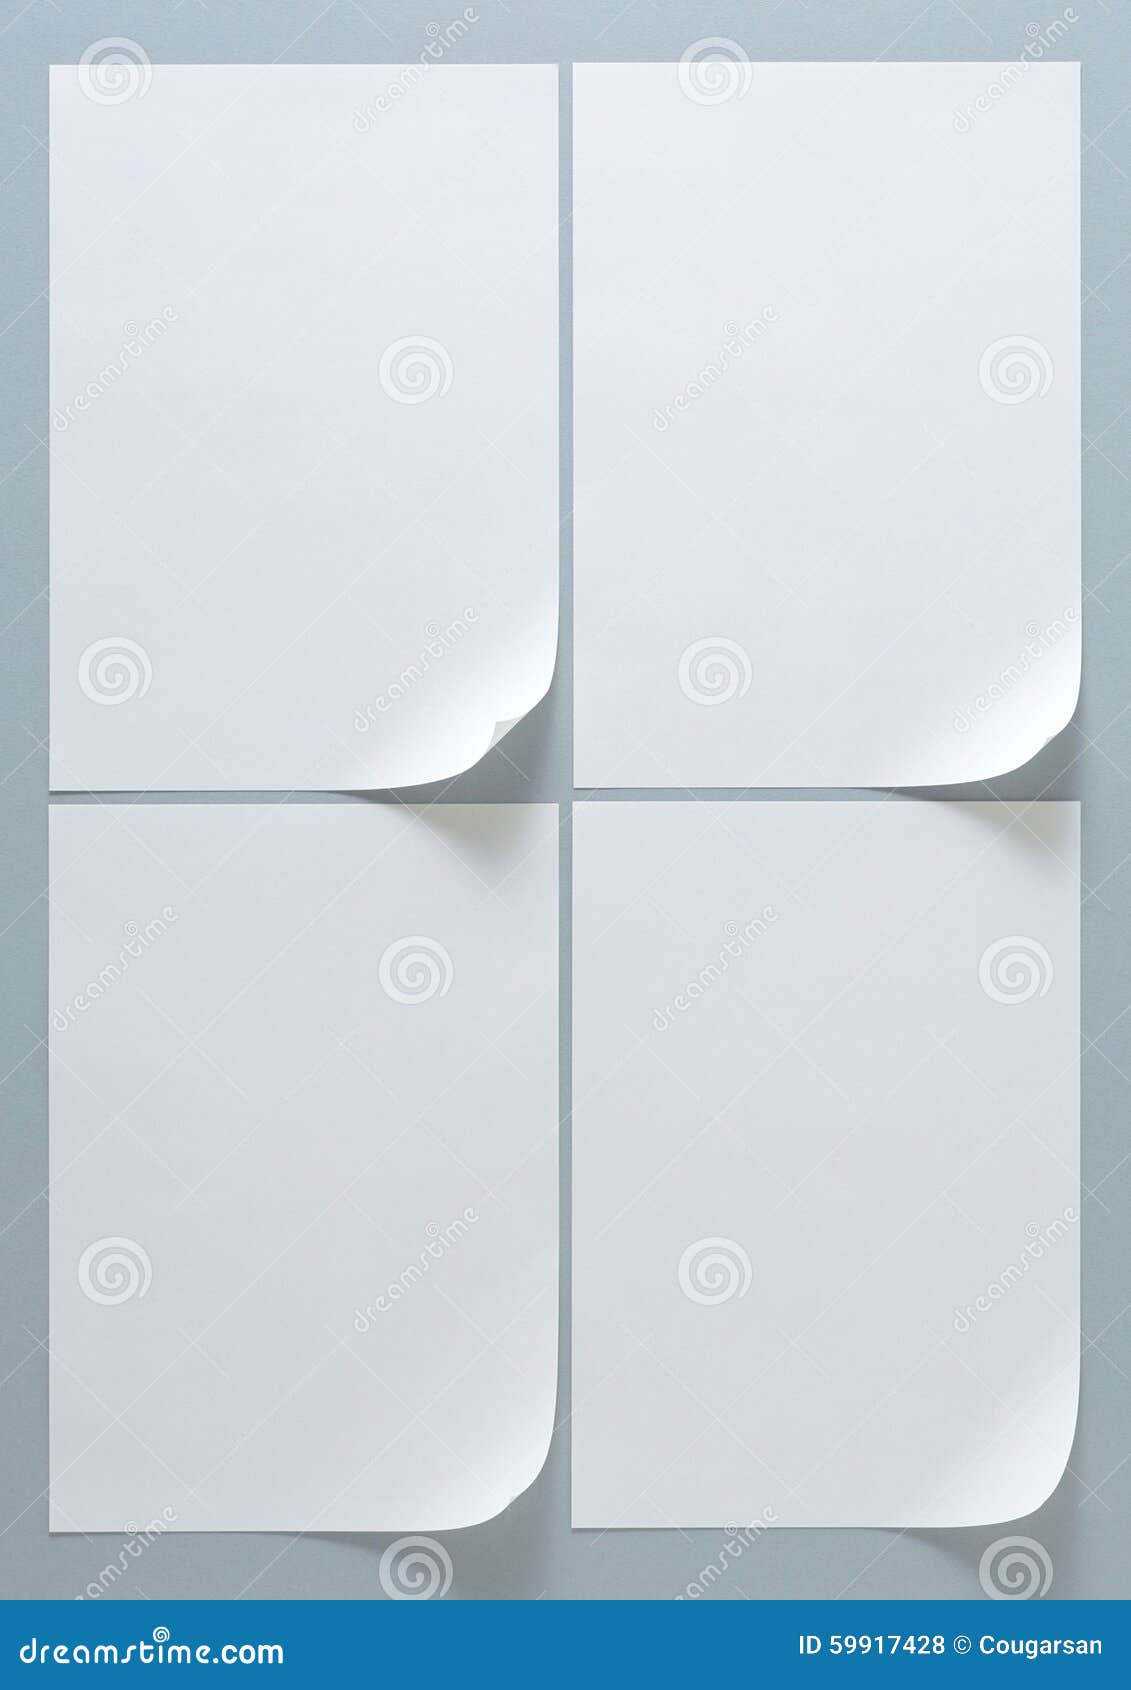 Papier De Taille De La Disposition A4 De Cadre De Conception Photo stock -  Image du espace, blanc: 59917428